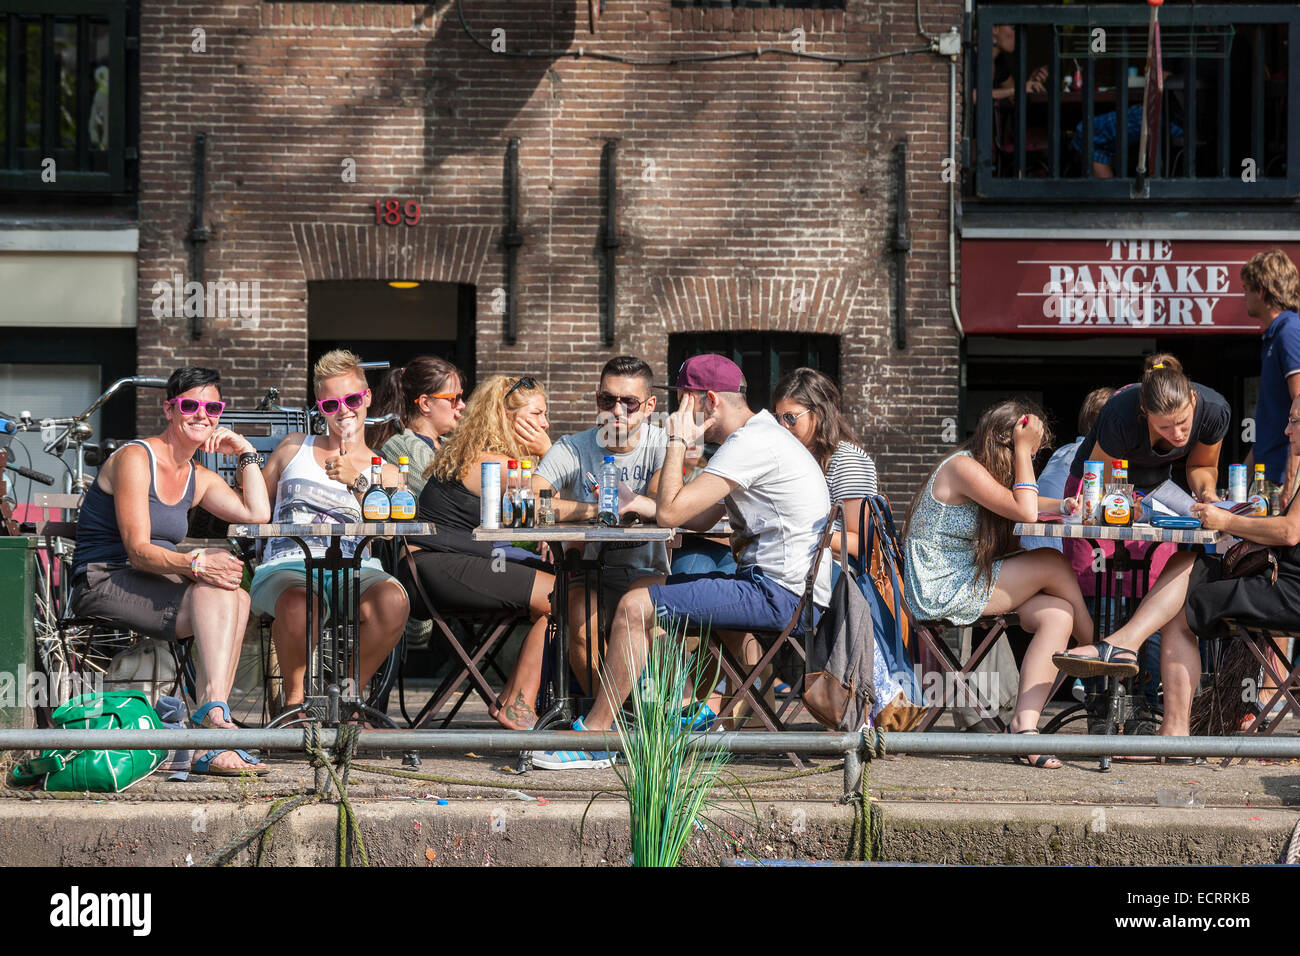 Amsterdam-Pfannkuchen-Bäckerei-Restaurant am Prinsengracht Kanal. Leute sitzen auf dem Rand des Wassers. Aus dem Kanal zu sehen. Stockfoto